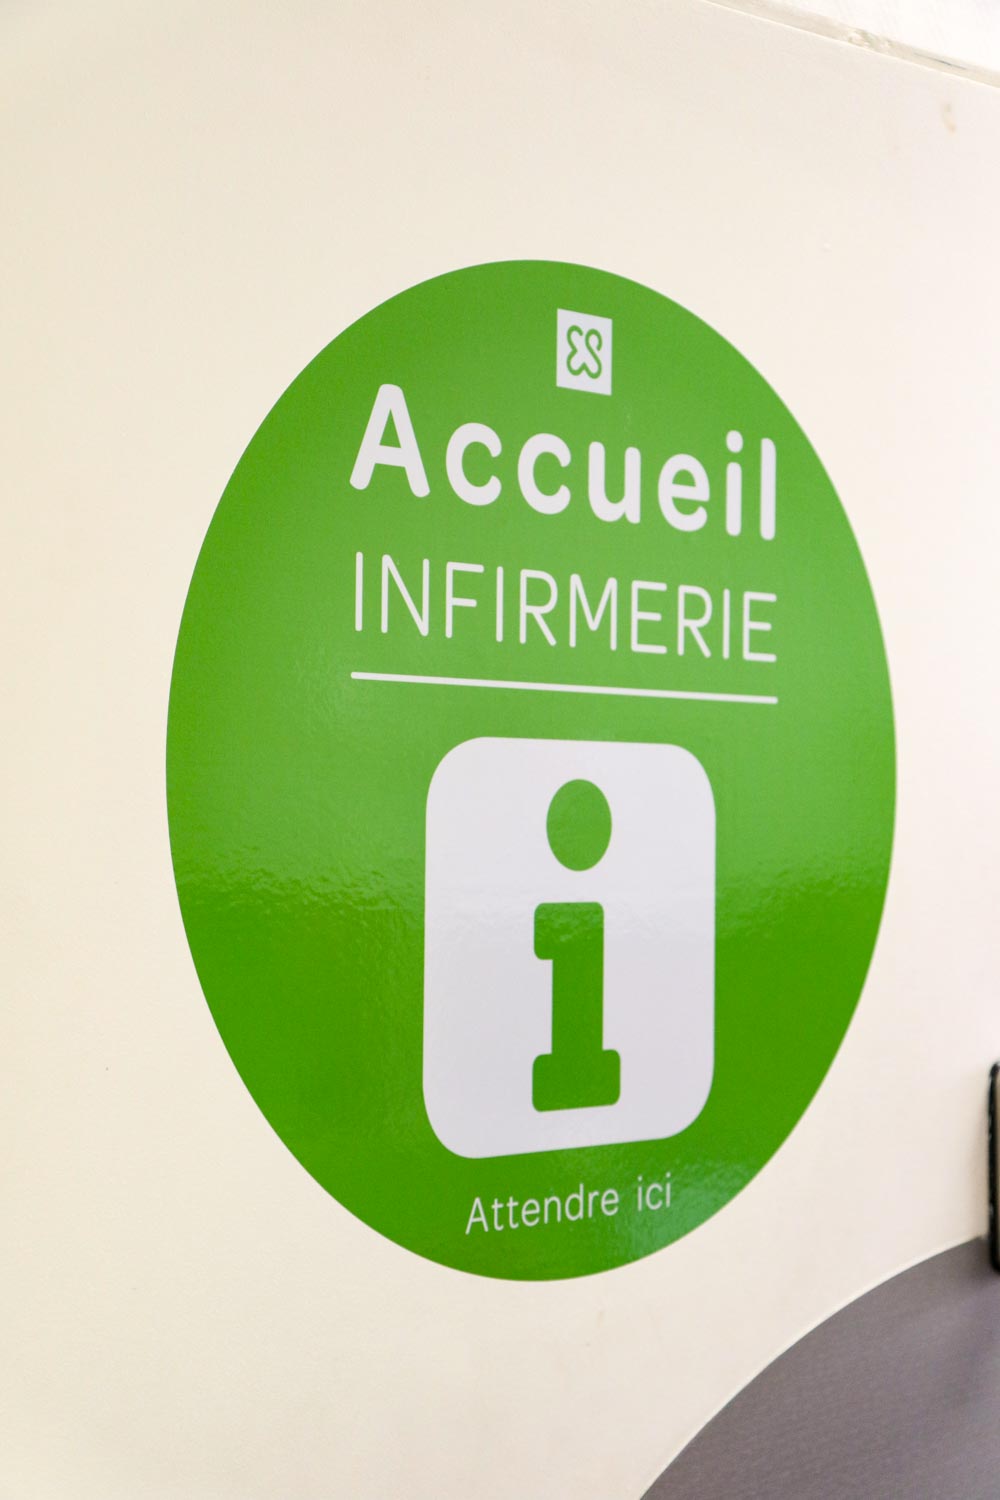 Adhésif-infirmerie-Signalétique-milieu-dédical-Toulon-Elsan-St-Michel-Clinique-Hopital-Var